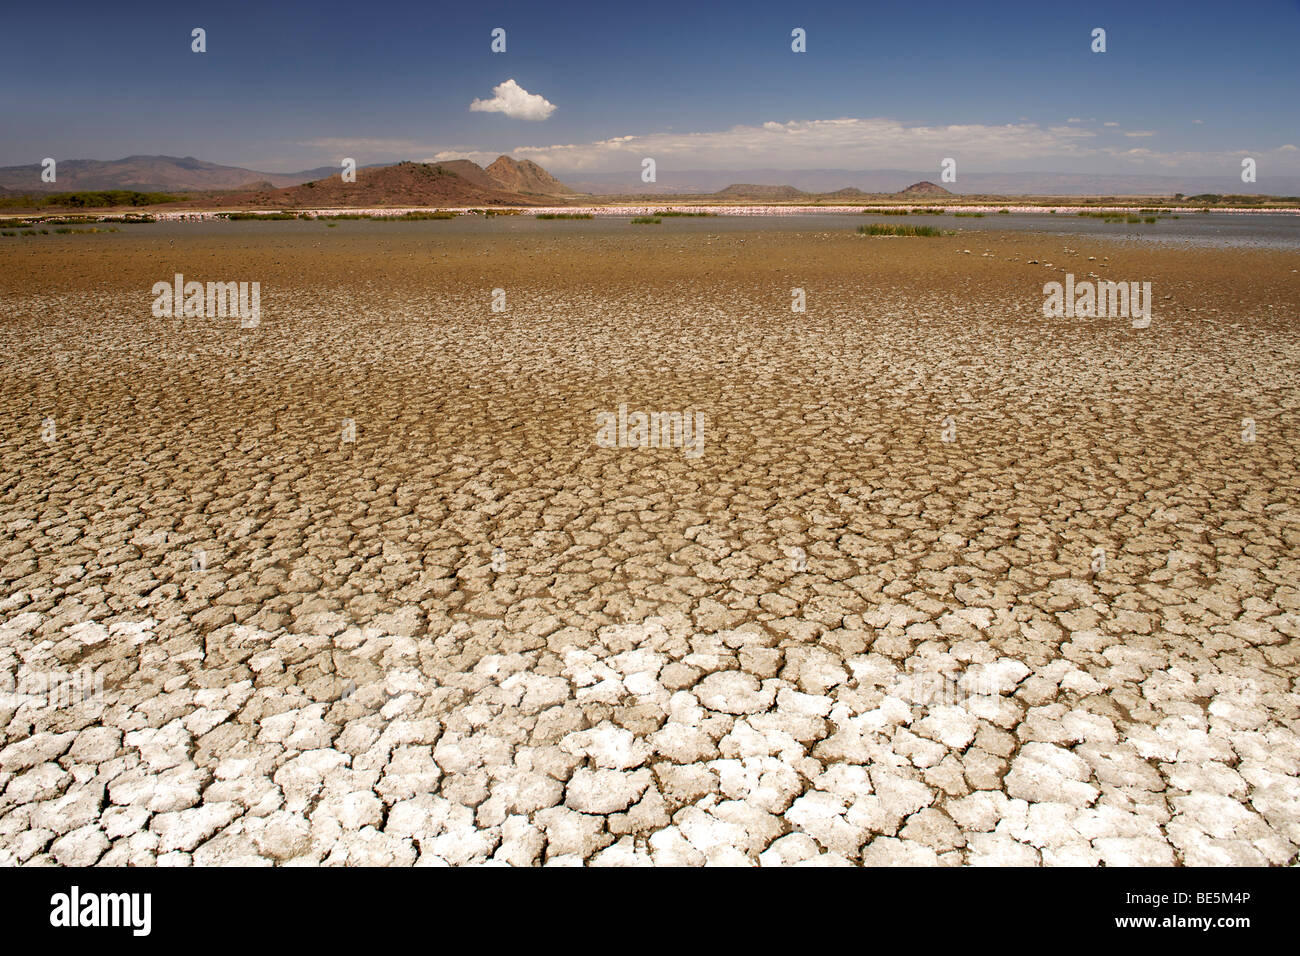 La boue sèche, craquelée lit du lac Elementaita près de Nakuru au Kenya occidental. Banque D'Images